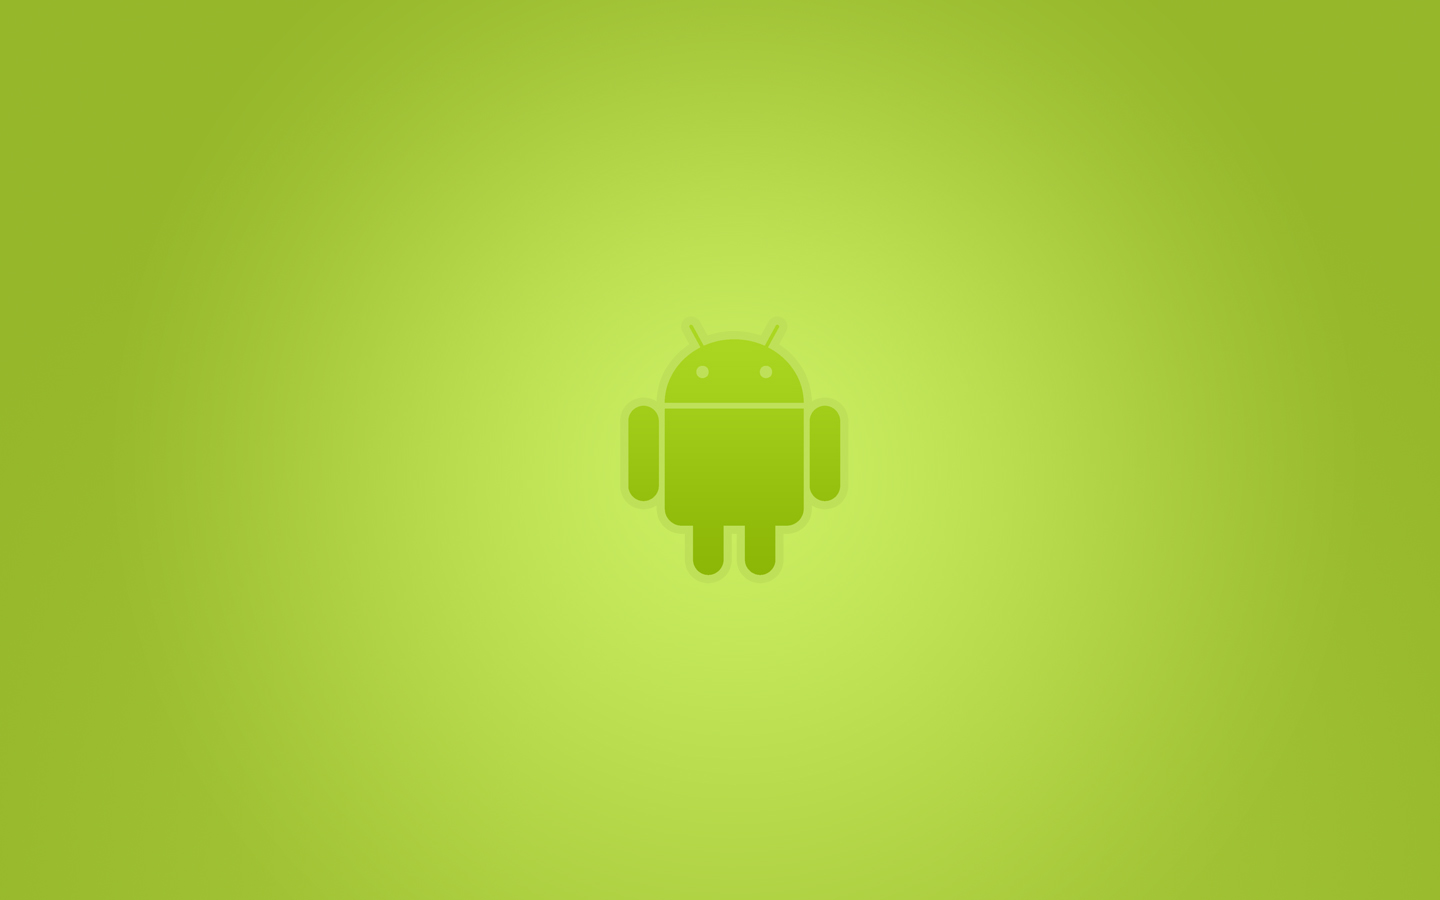 google wallpaper für android,grün,gelb,design,illustration,technologie